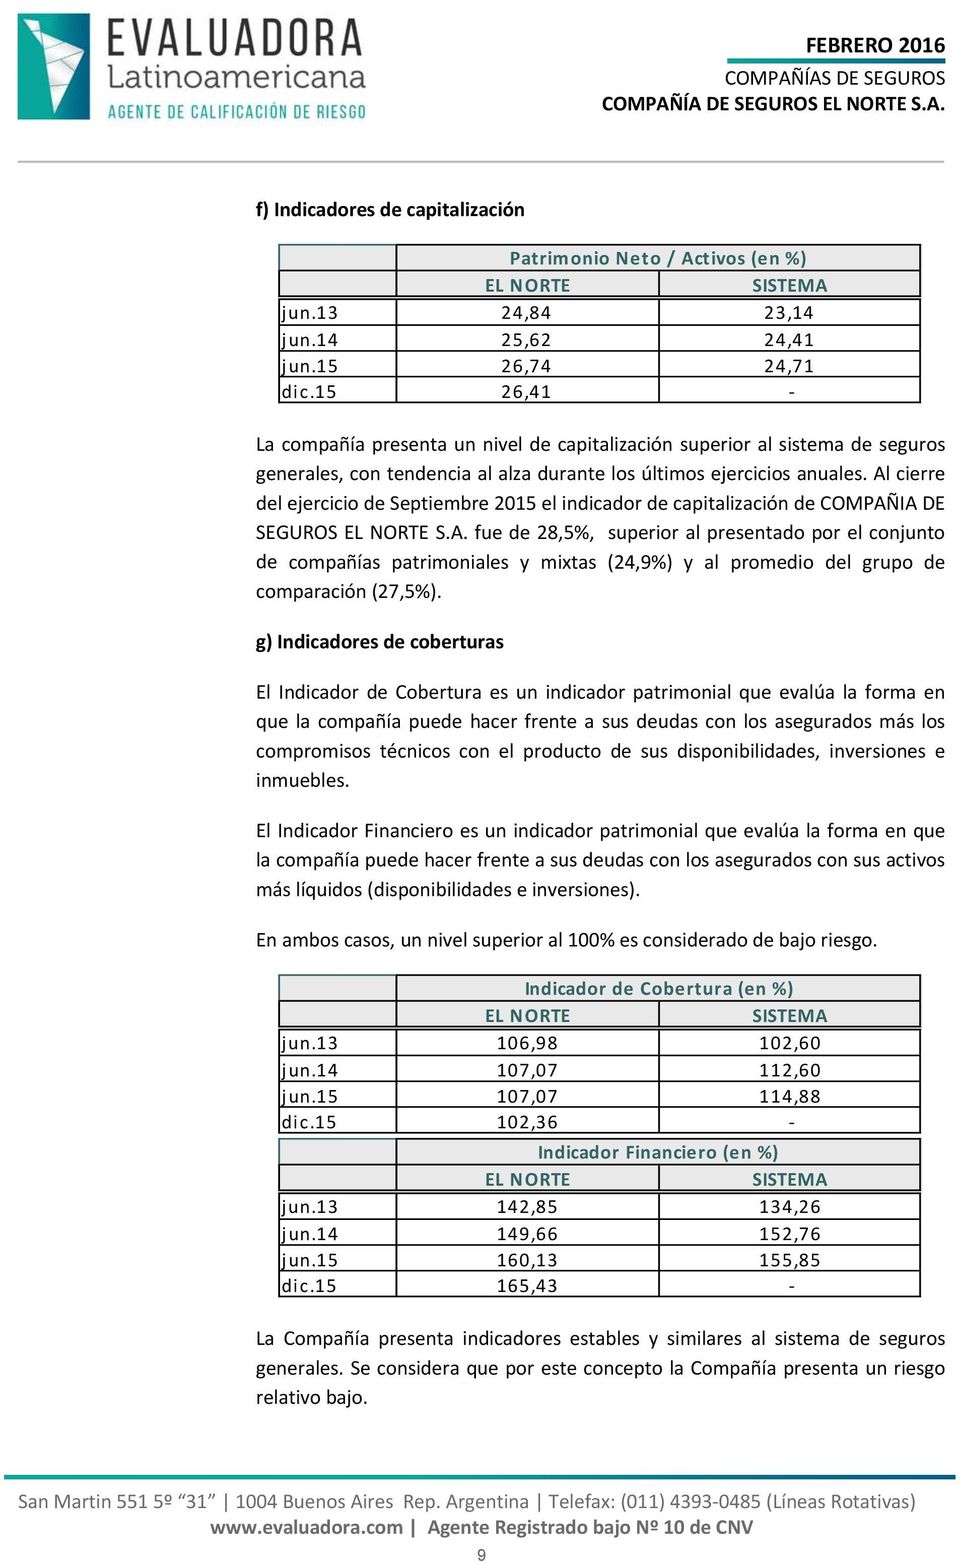 Al cierre del ejercicio de Septiembre 2015 el indicador de capitalización de COMPAÑIA DE SEGUROS S.A. fue de 28,5%, superior al presentado por el conjunto de compañías patrimoniales y mixtas (24,9%) y al promedio del grupo de comparación (27,5%).